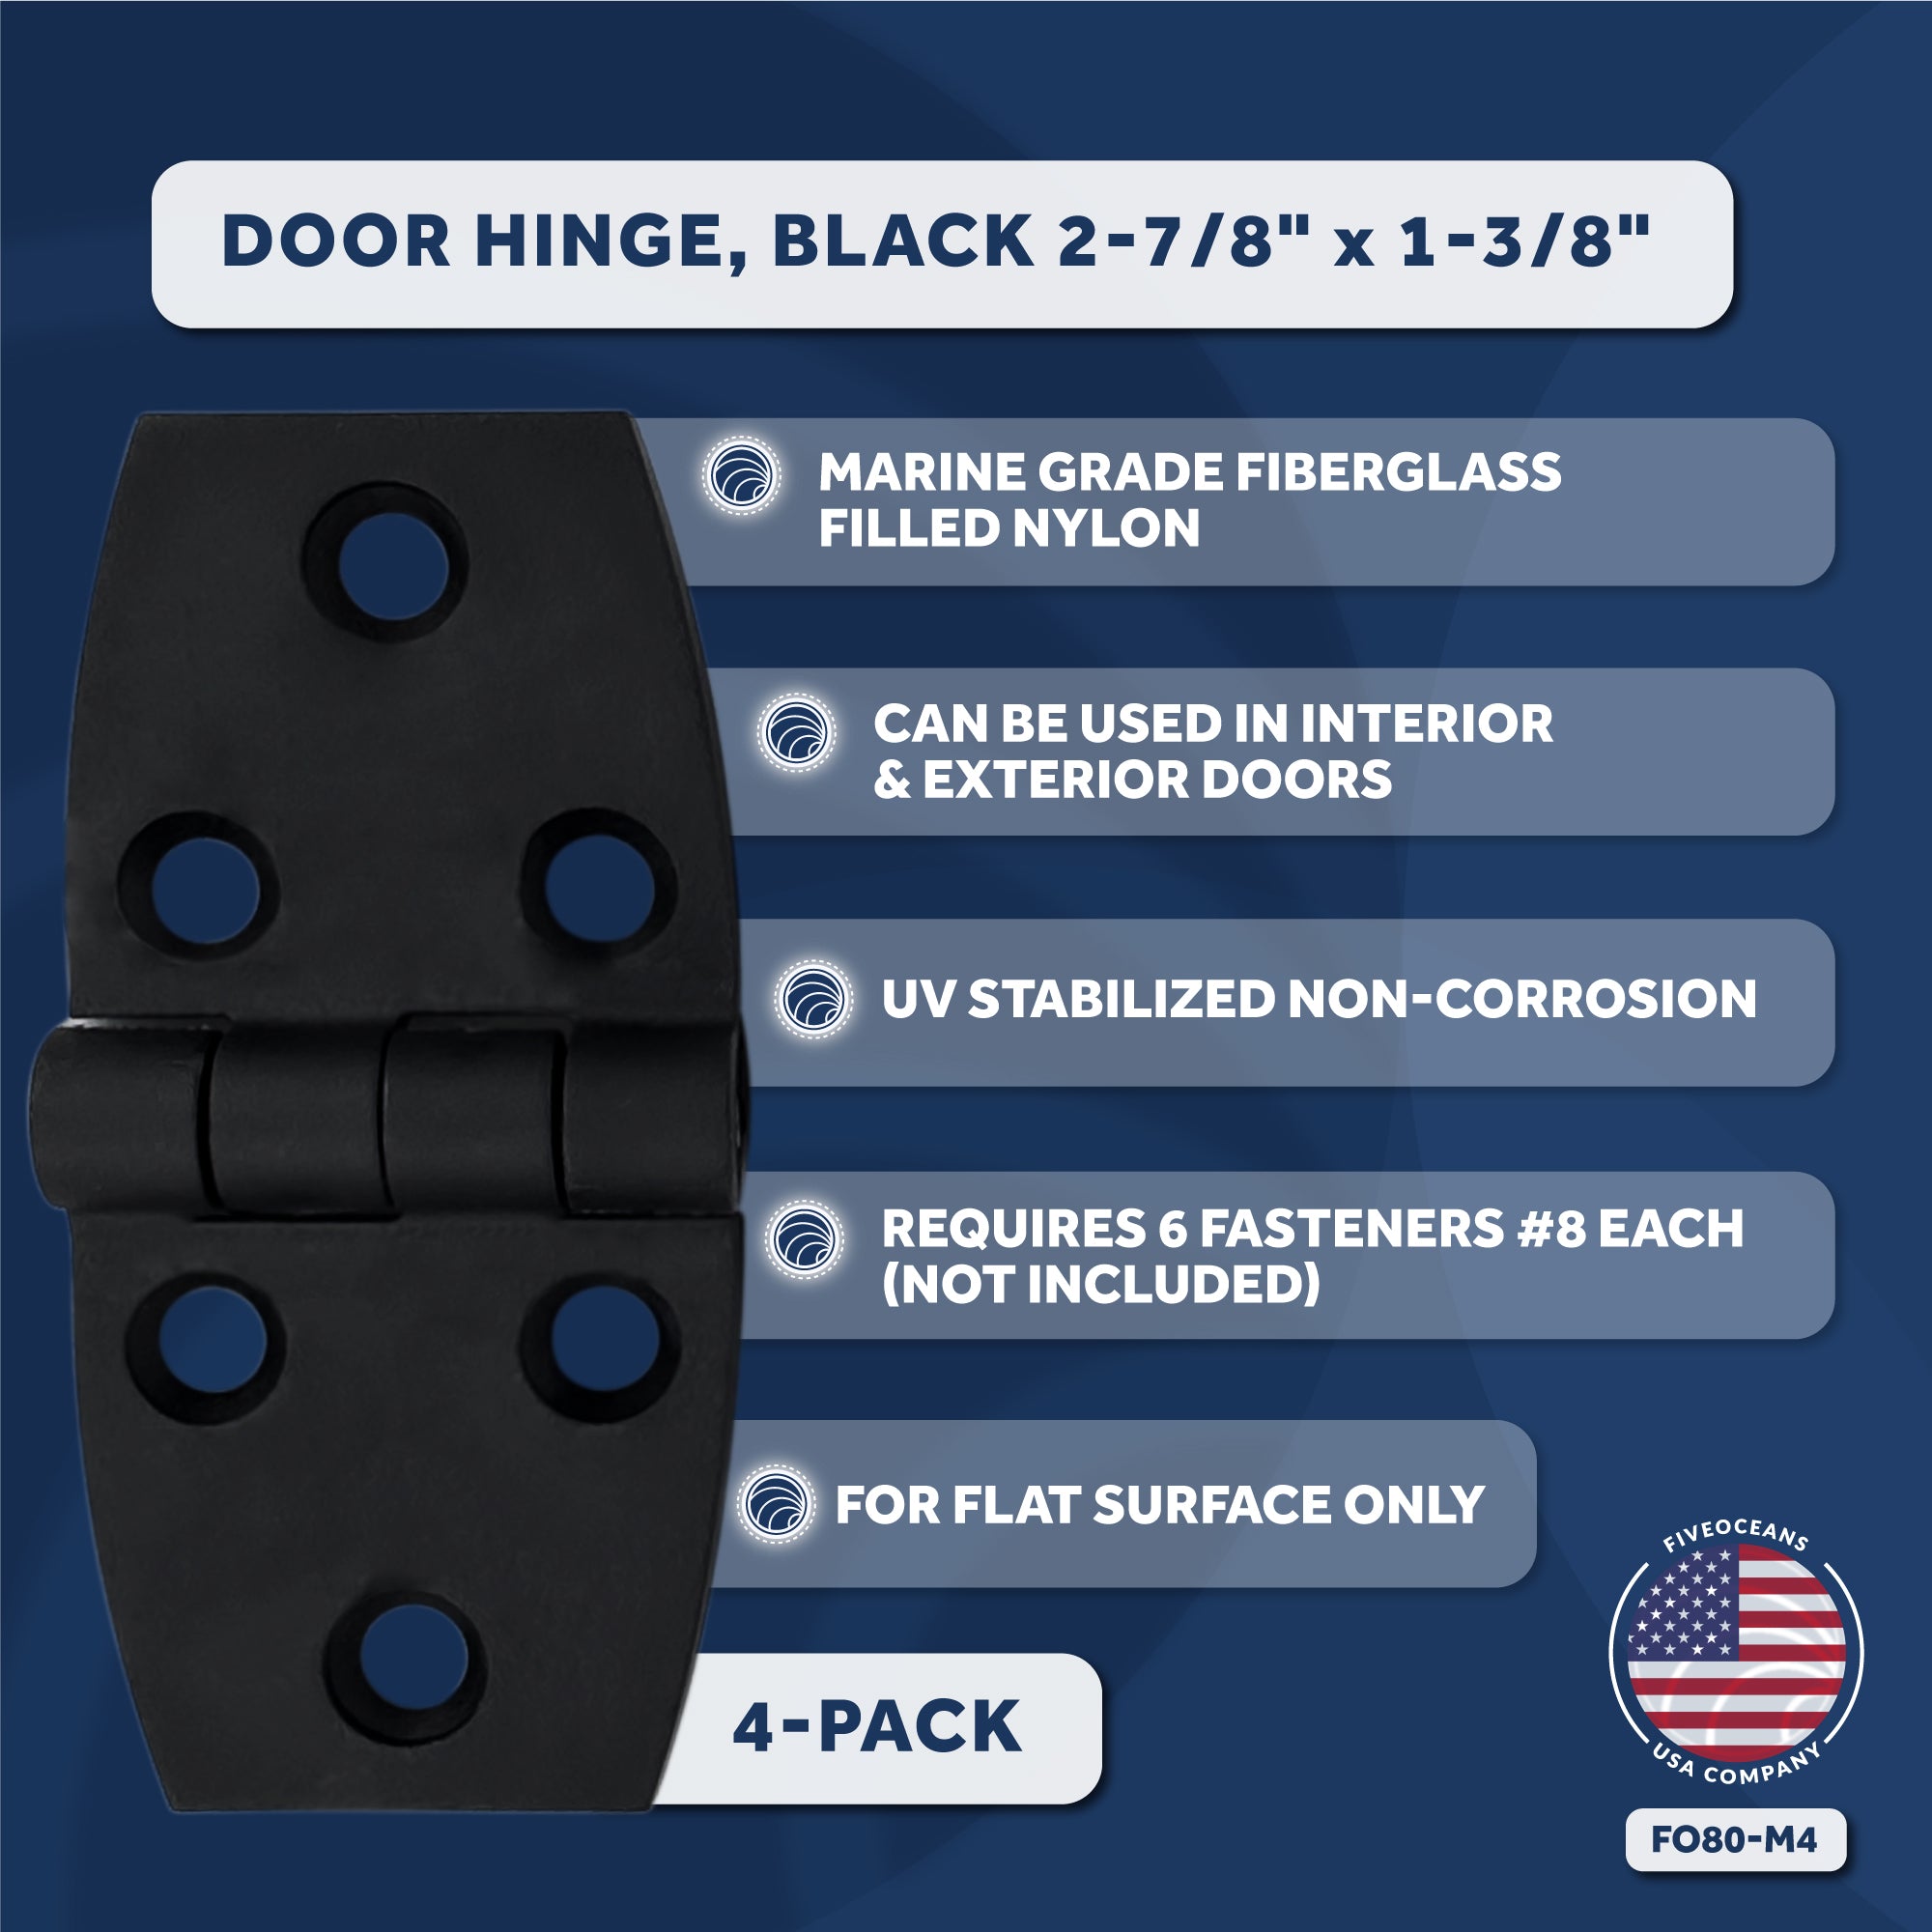 Door Hinge, Black 2-7/8" x 1-3/8", 4-Pack - FO80-M4